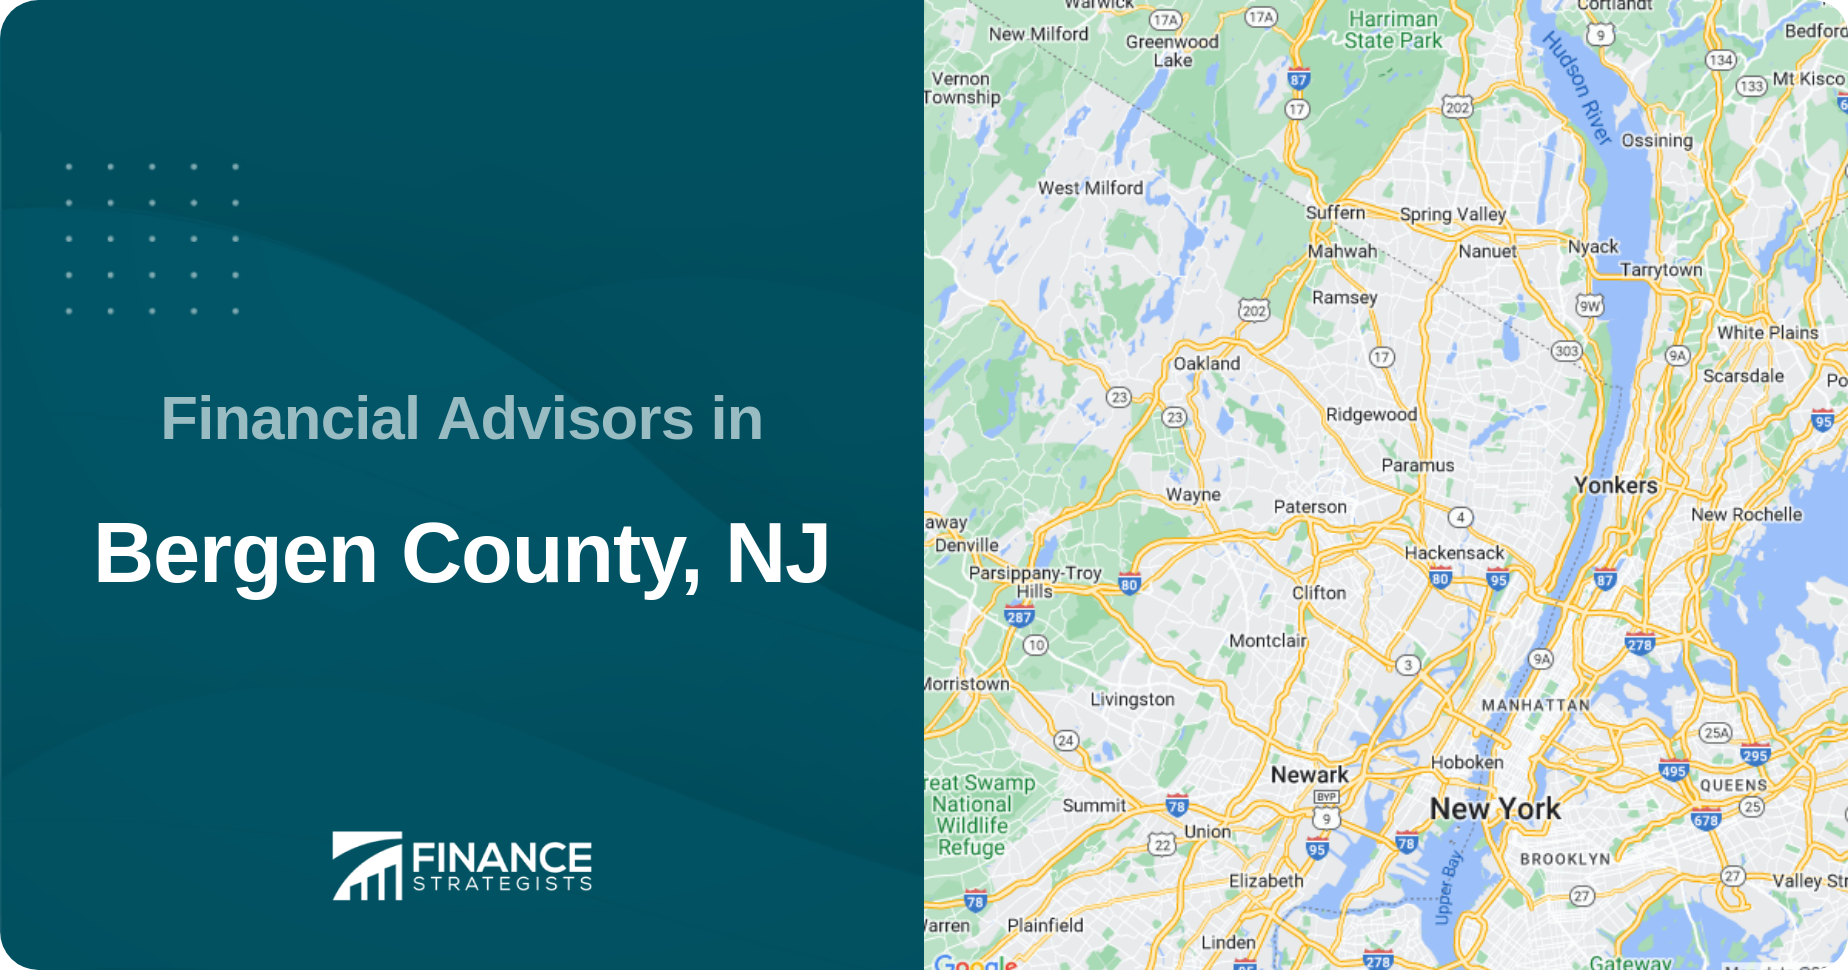 Financial Advisors in Bergen County, NJ